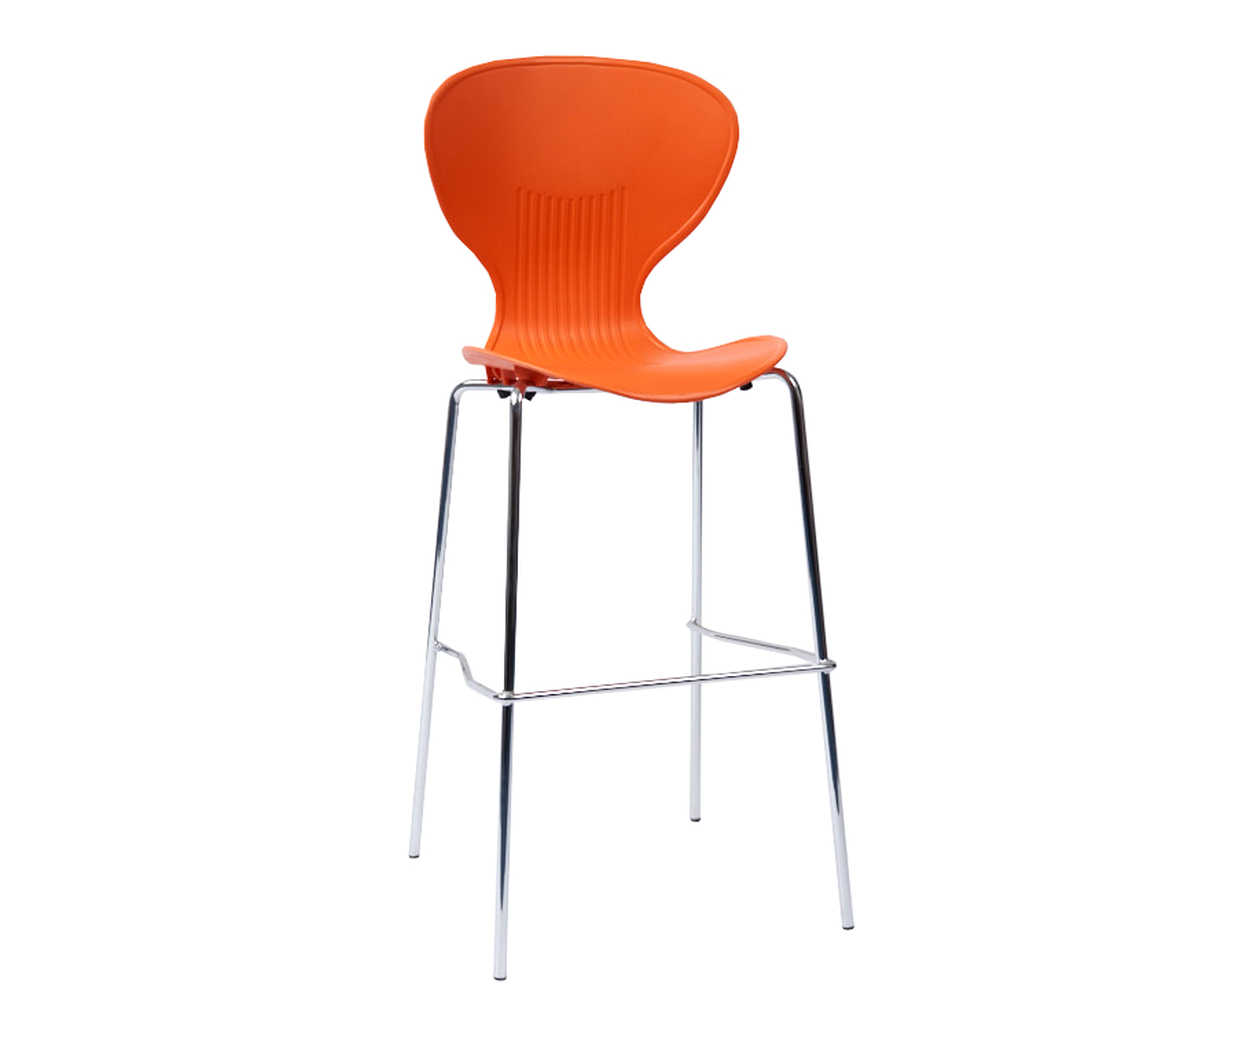 orn-rochester-stool-01.jpg